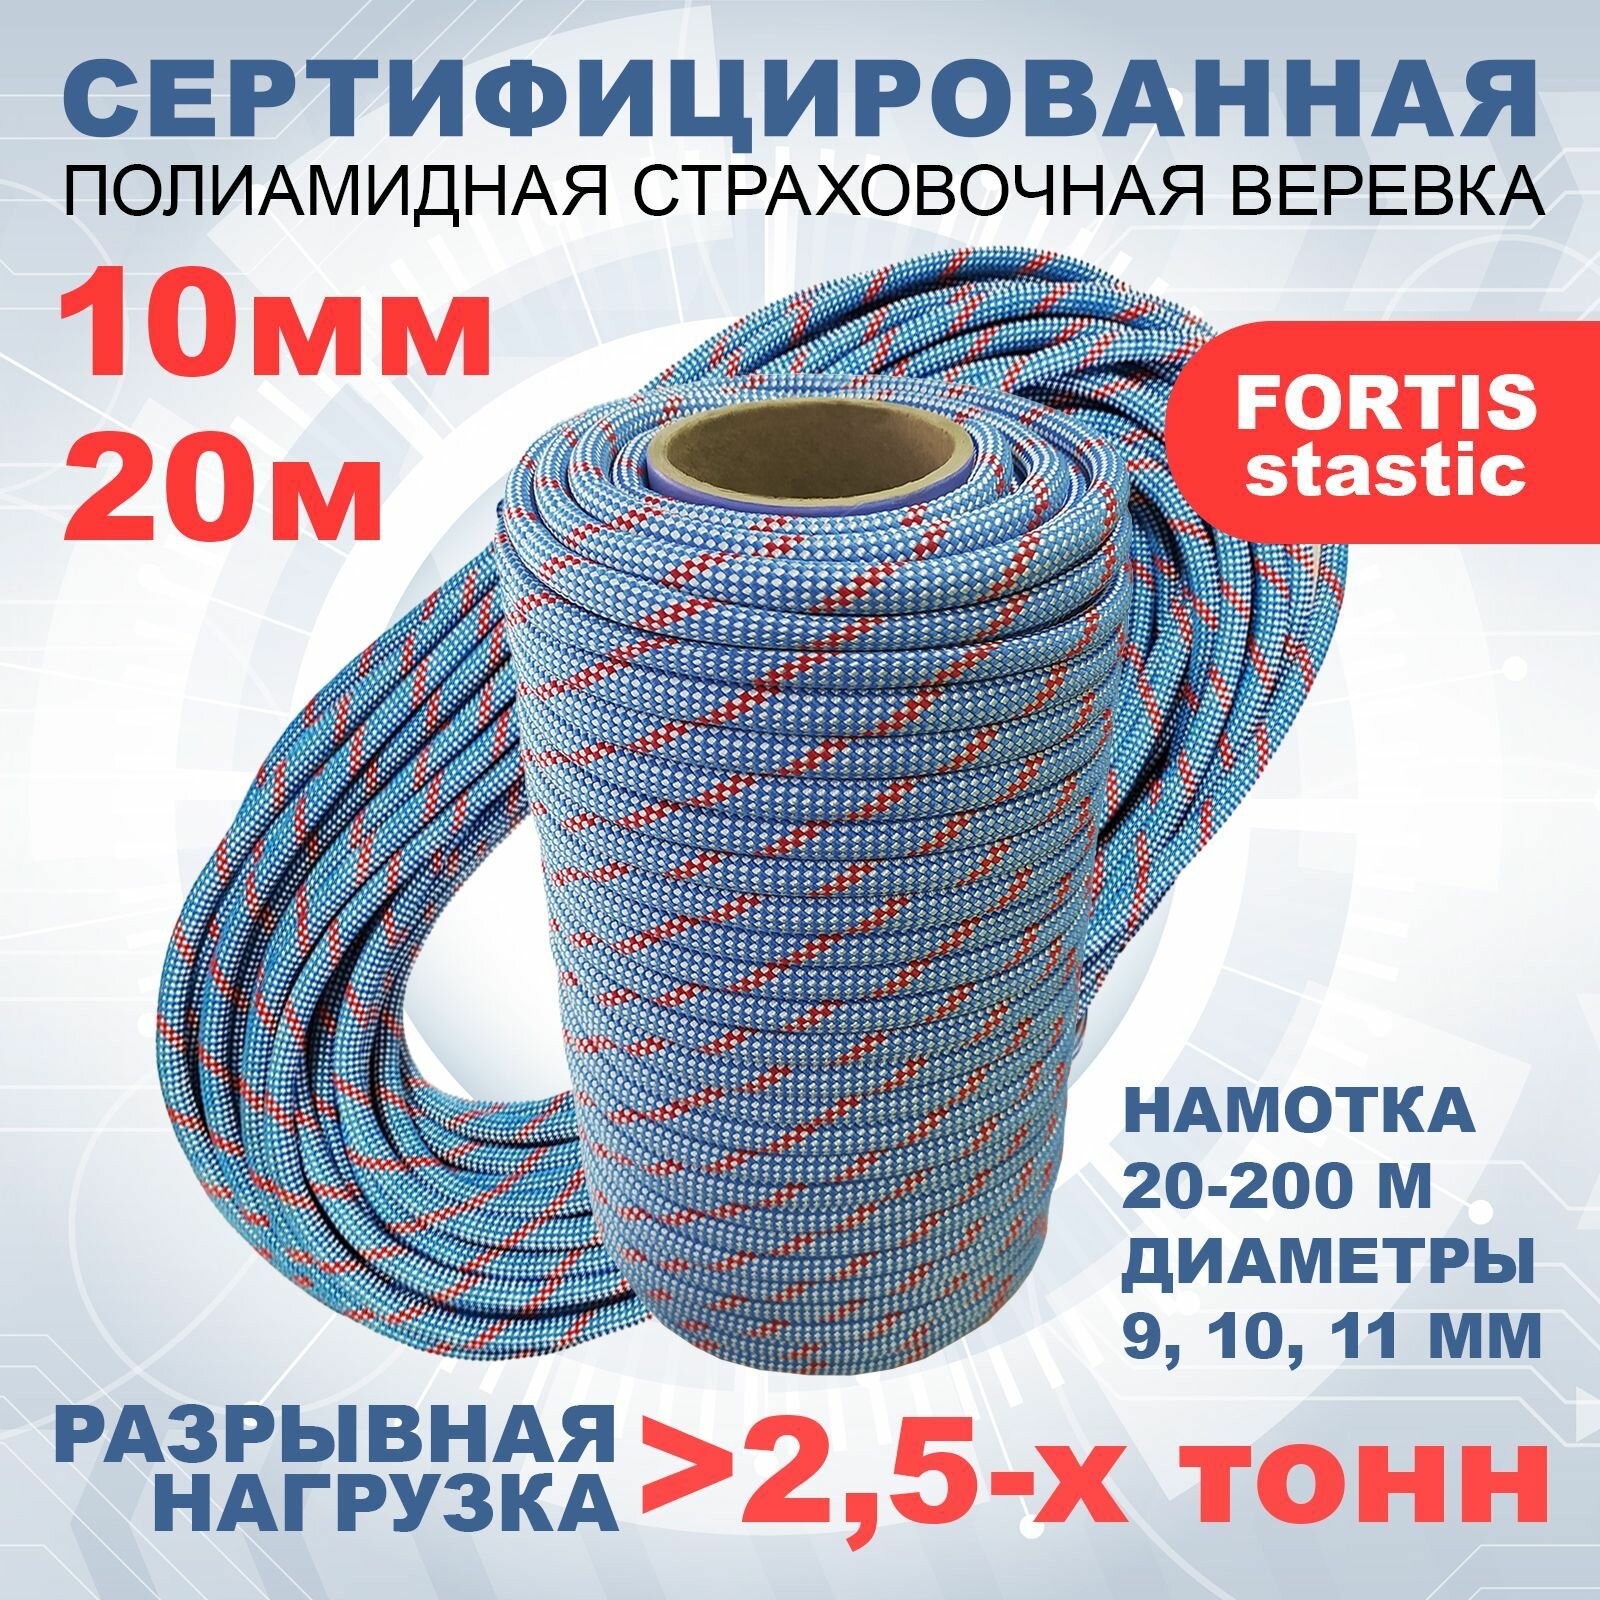 Статическая высокопрочная веревка Fortis Static, 10 мм, 20 м, арт.462209